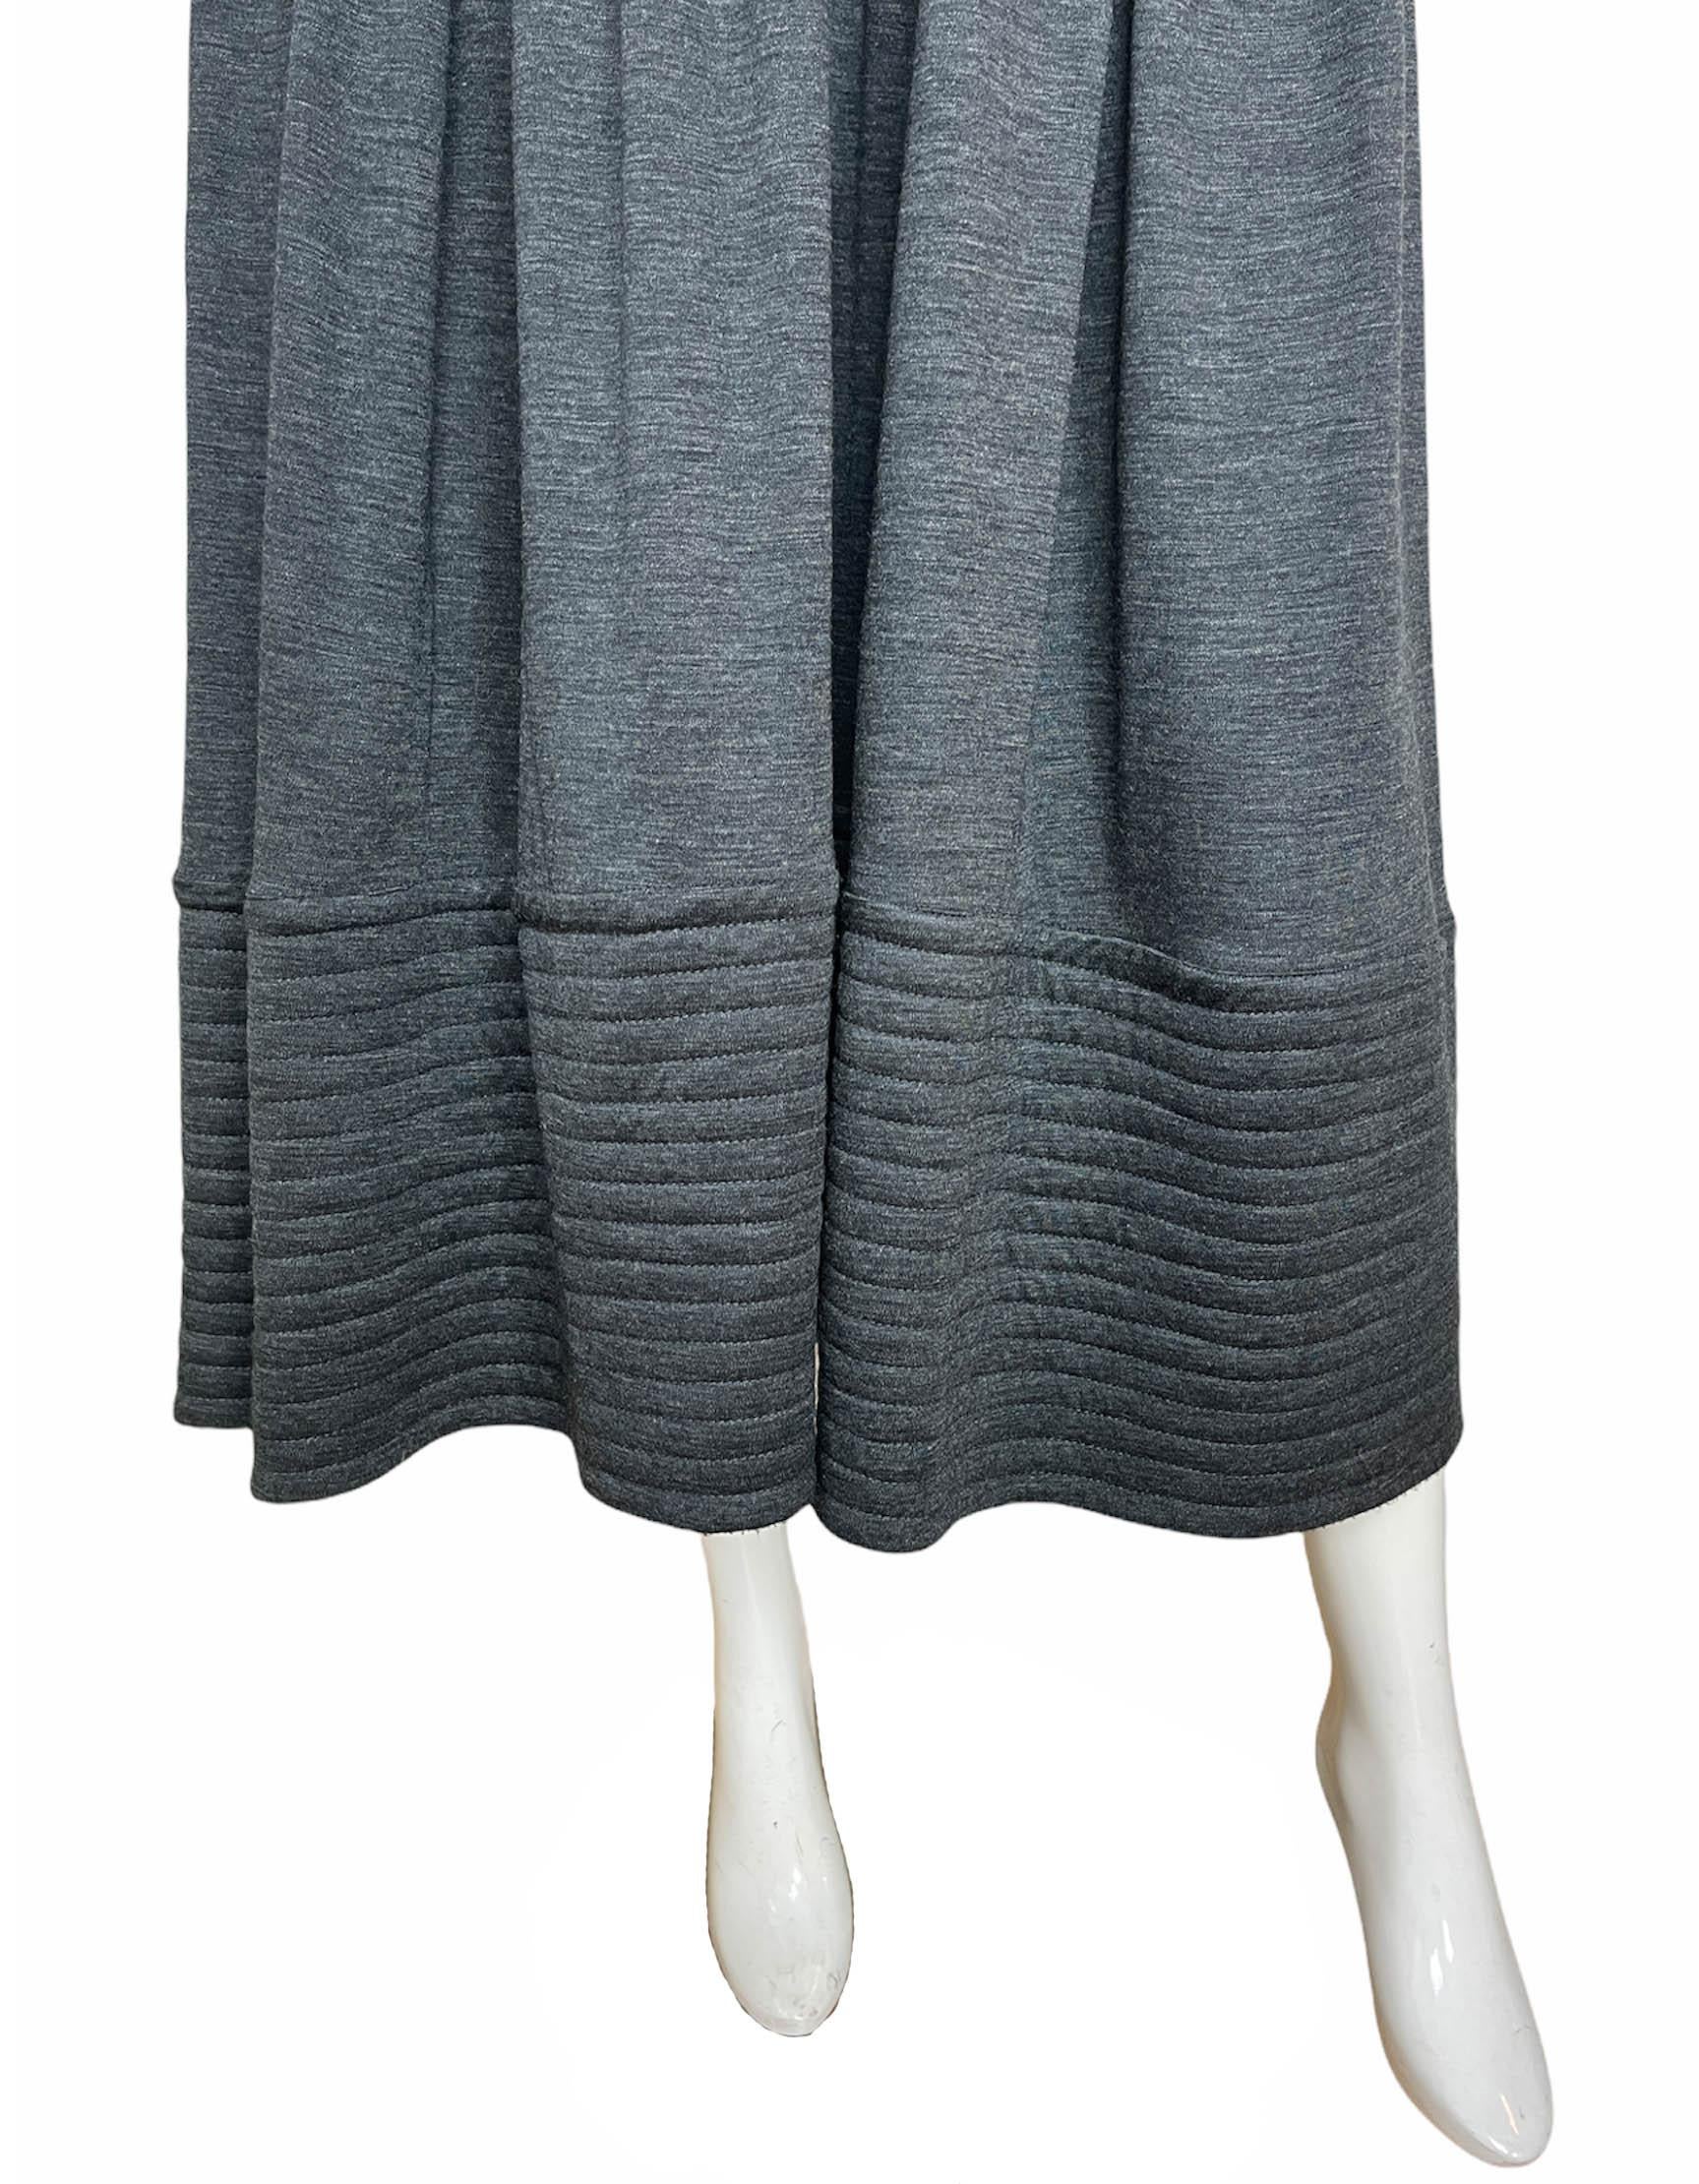 Women's Geoffrey Beene Grey Longsleeve Jersey Dress w/ Black Bodice sz S For Sale